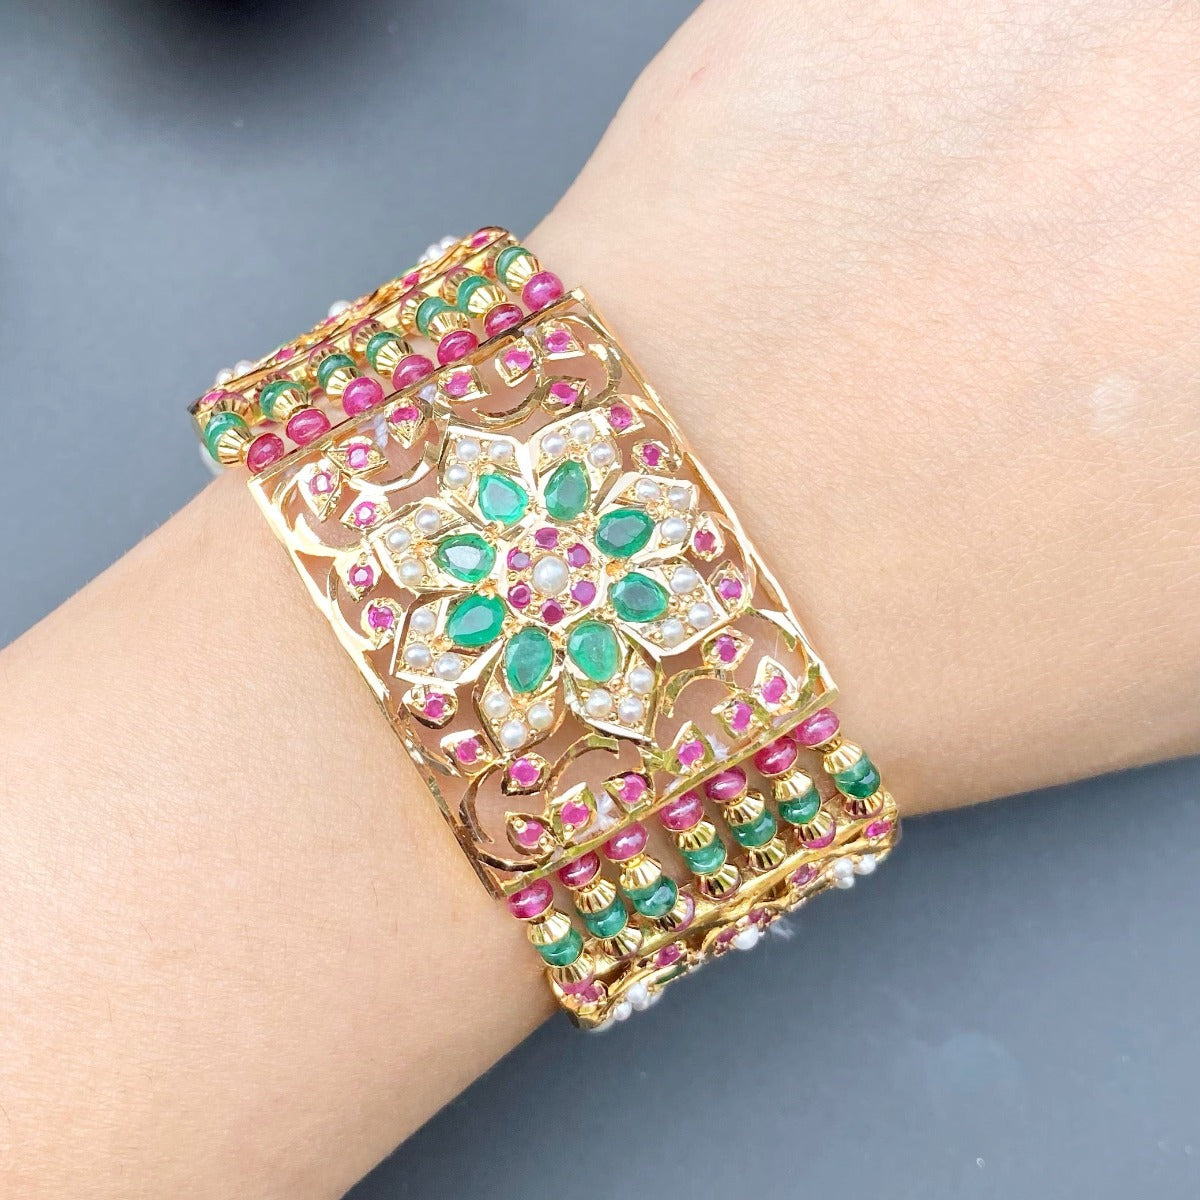 original gold bracelet for women studded with precious stones